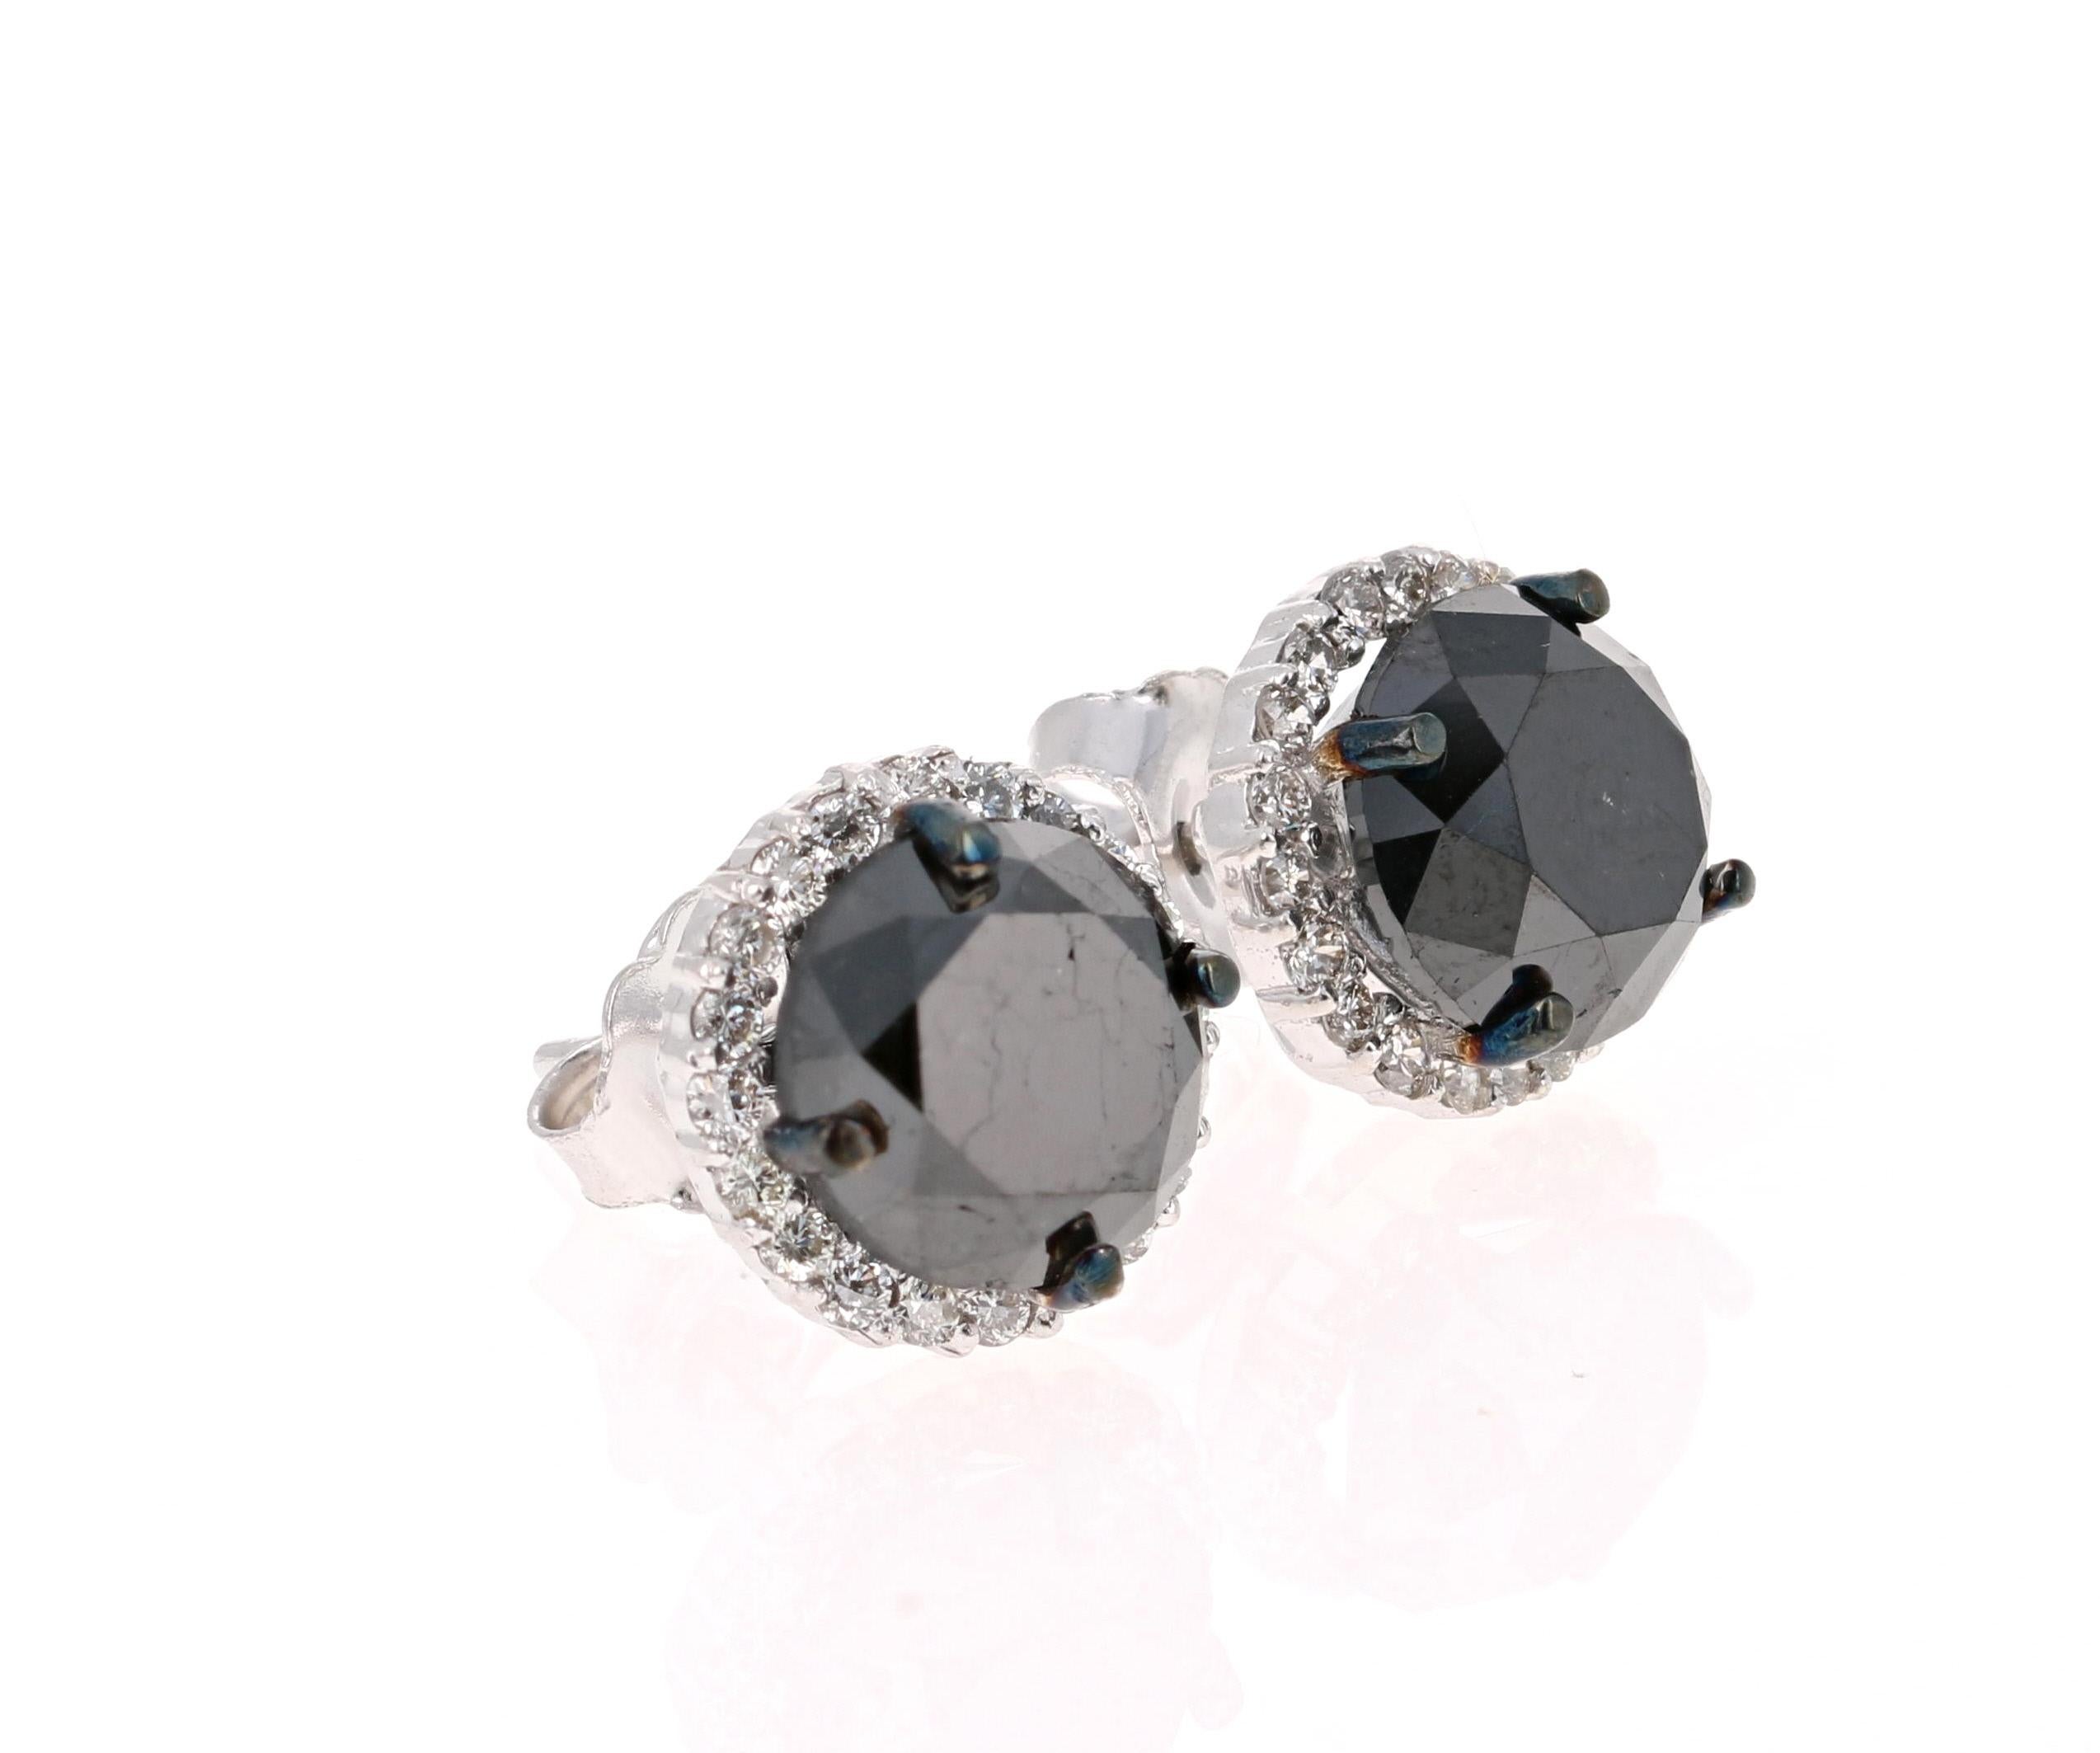  Schwarzer Diamant-Ohrring-Ohrstecker

2 wunderschöne schwarze Diamanten mit einem Gewicht von 5,18 Karat sind von 40 Diamanten im Rundschliff mit einem Gewicht von 0,39 Karat umgeben. (Reinheit: VS, Farbe: H)  Das Gesamtkaratgewicht der Ohrringe